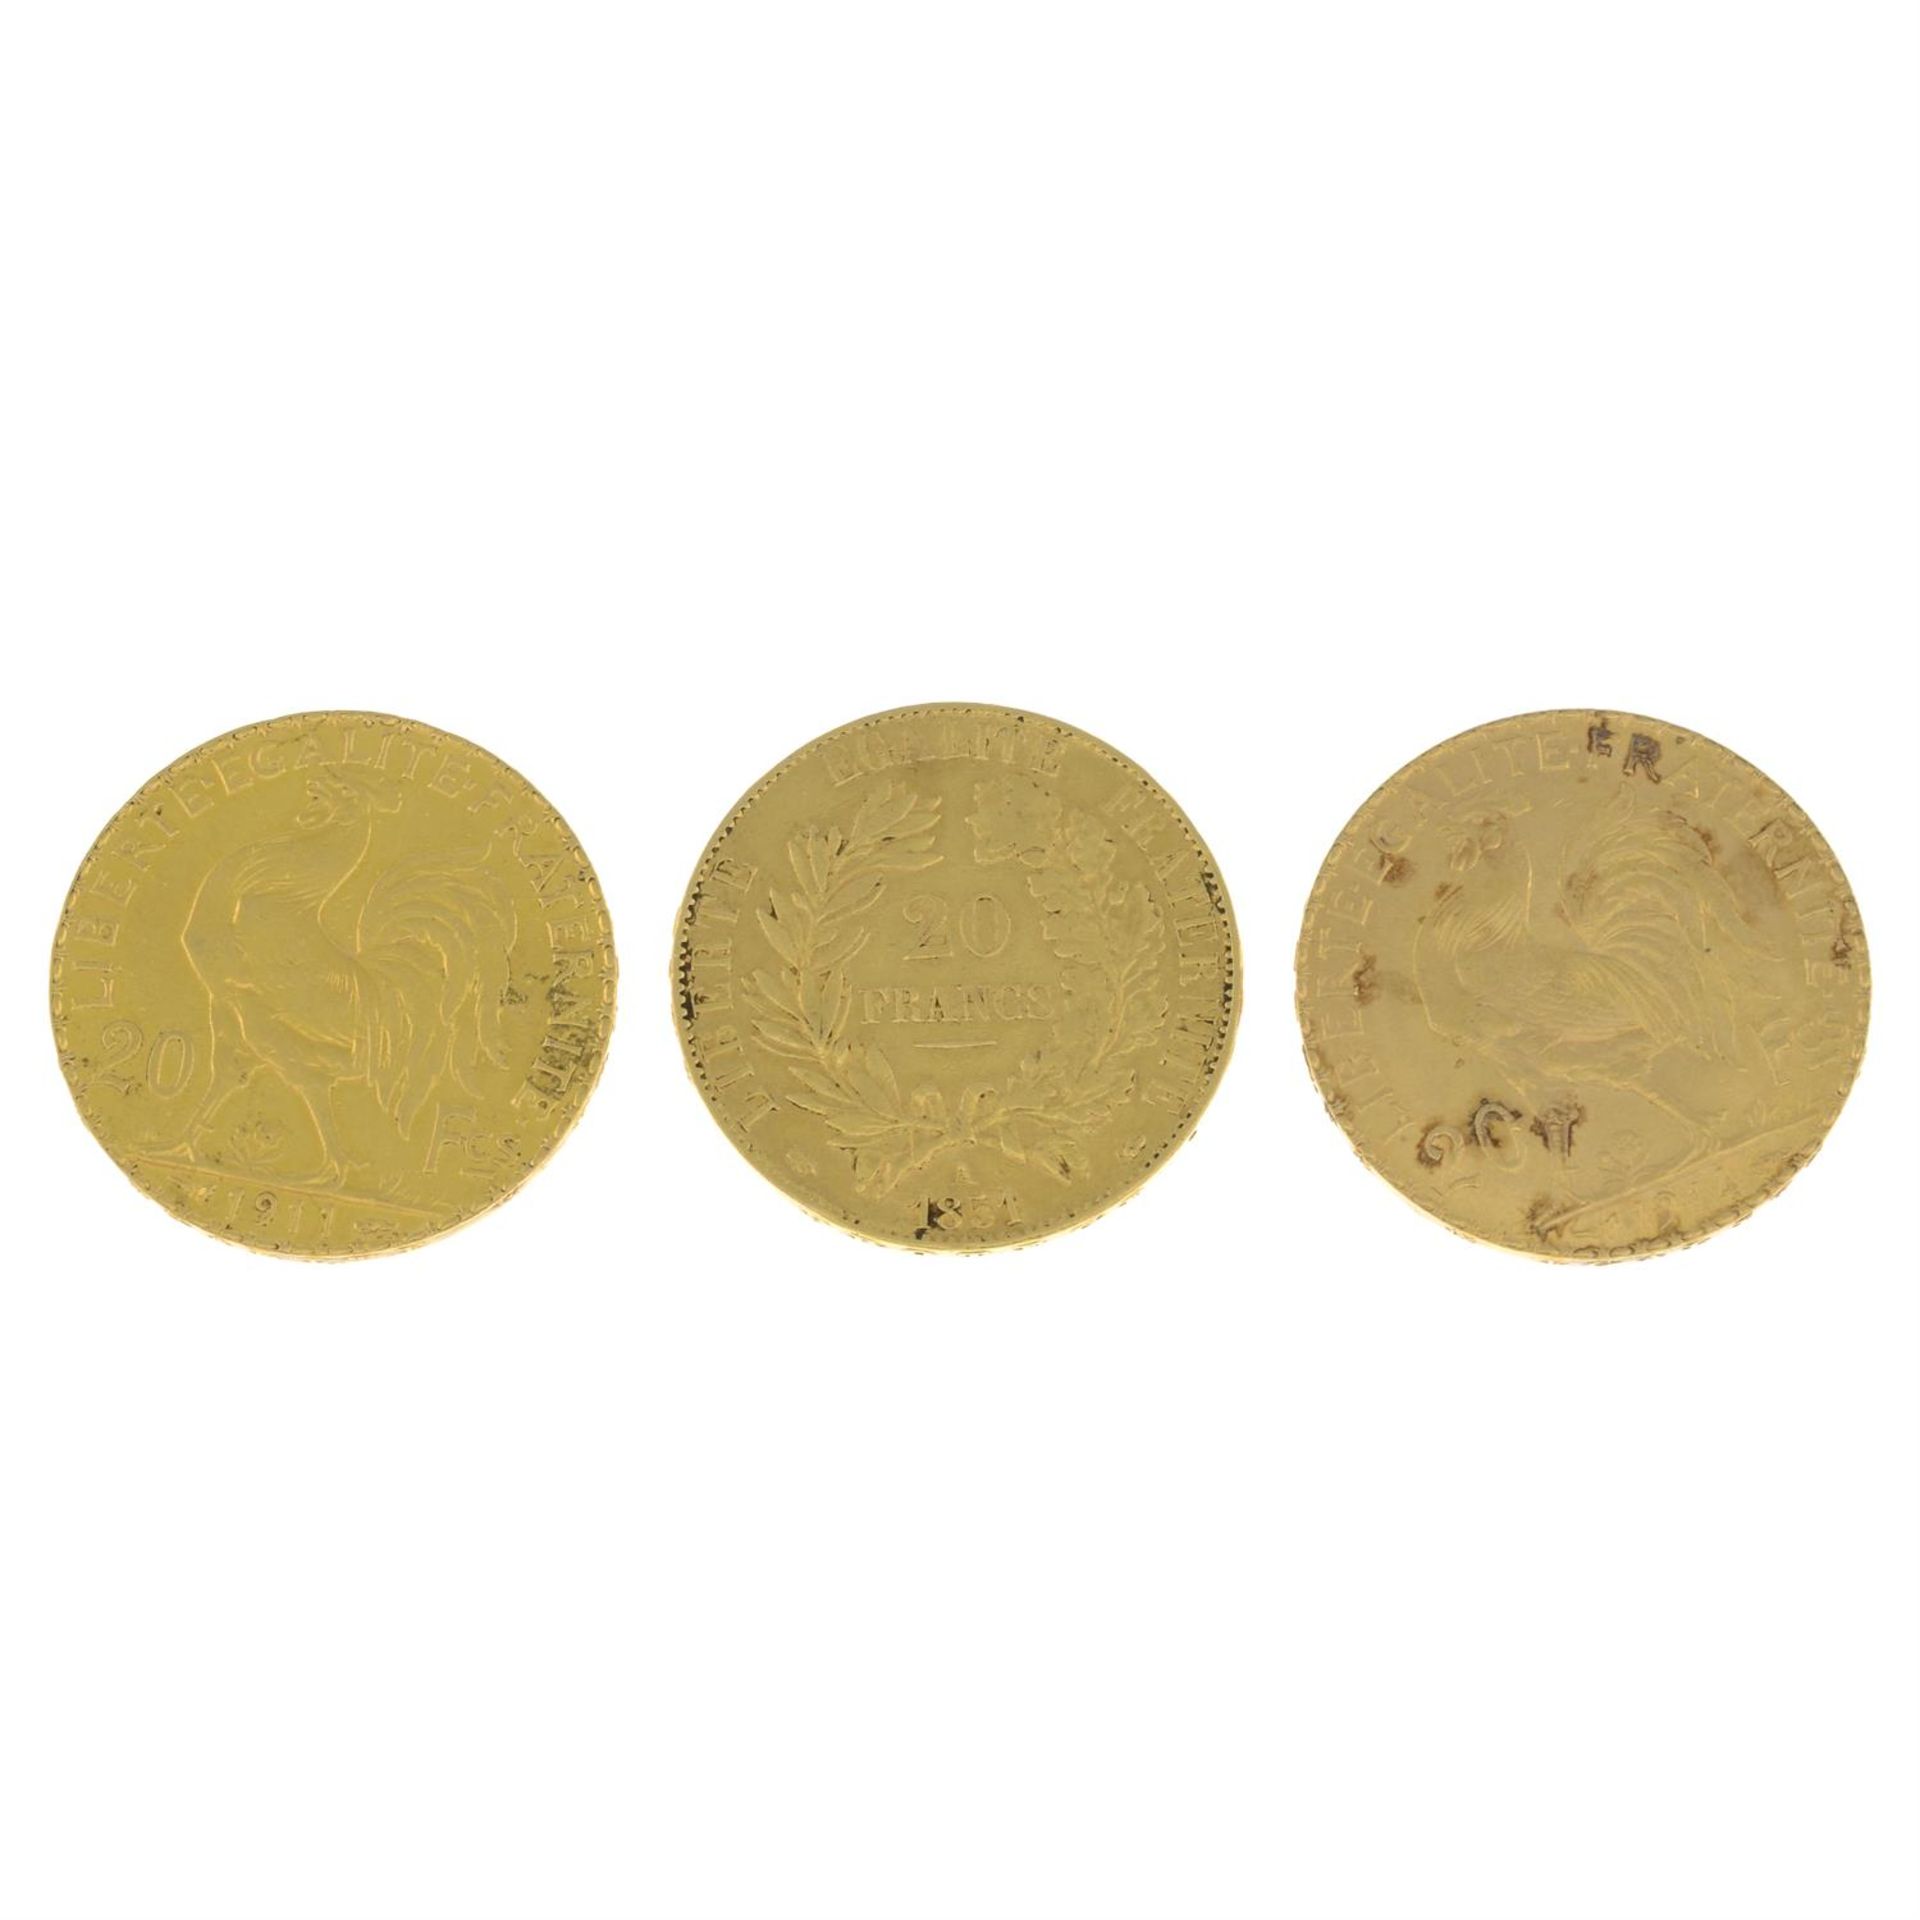 France, gold 20-Francs (3). - Image 2 of 2